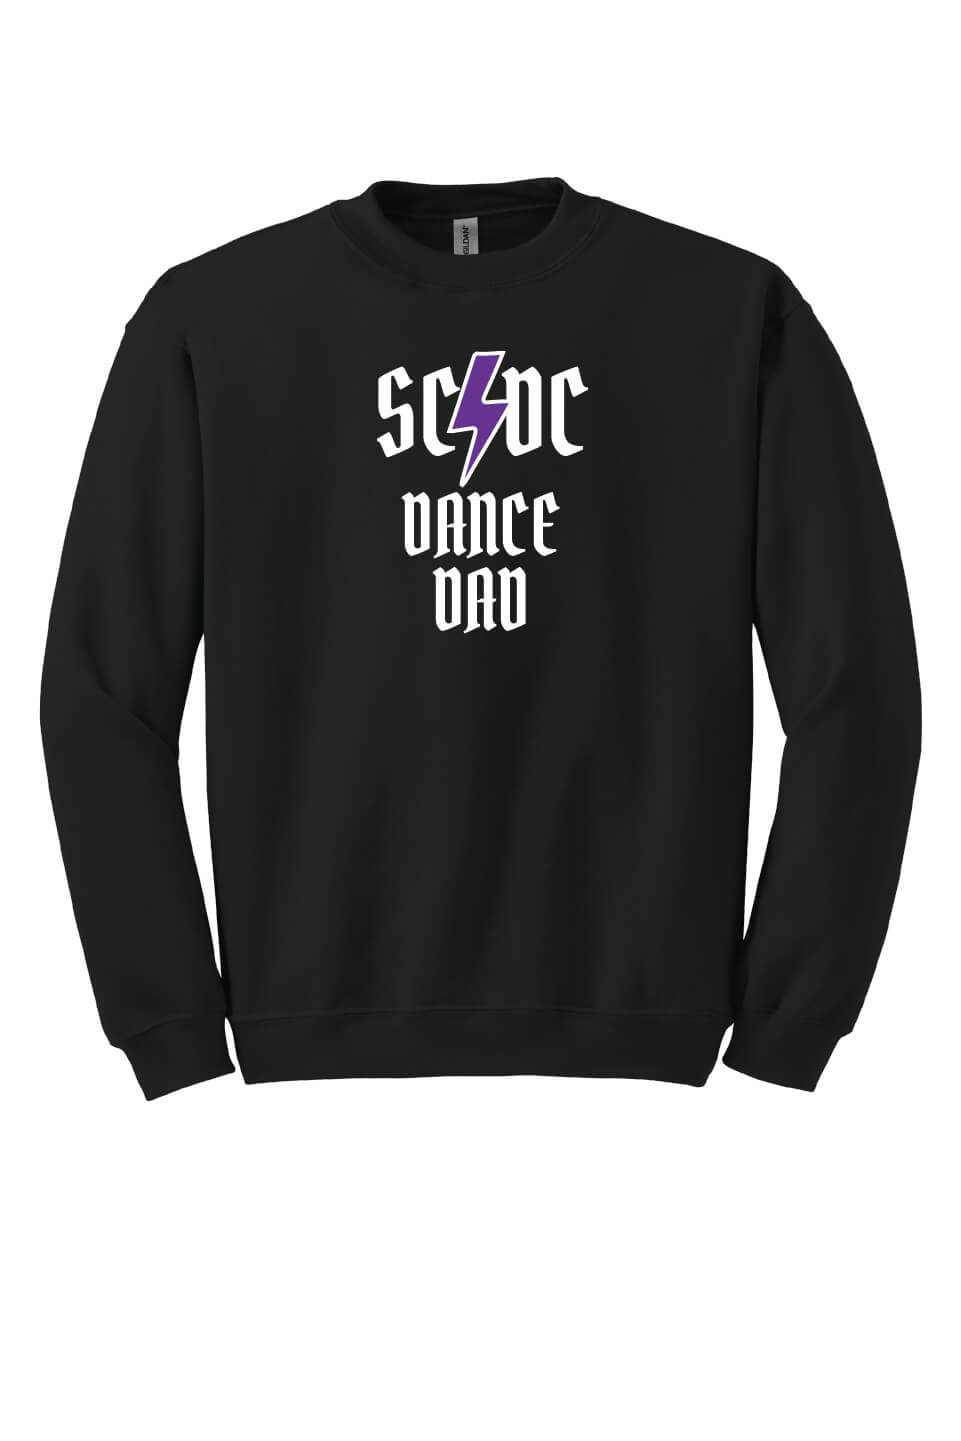 SCDC Dad Crewneck Sweatshirt black